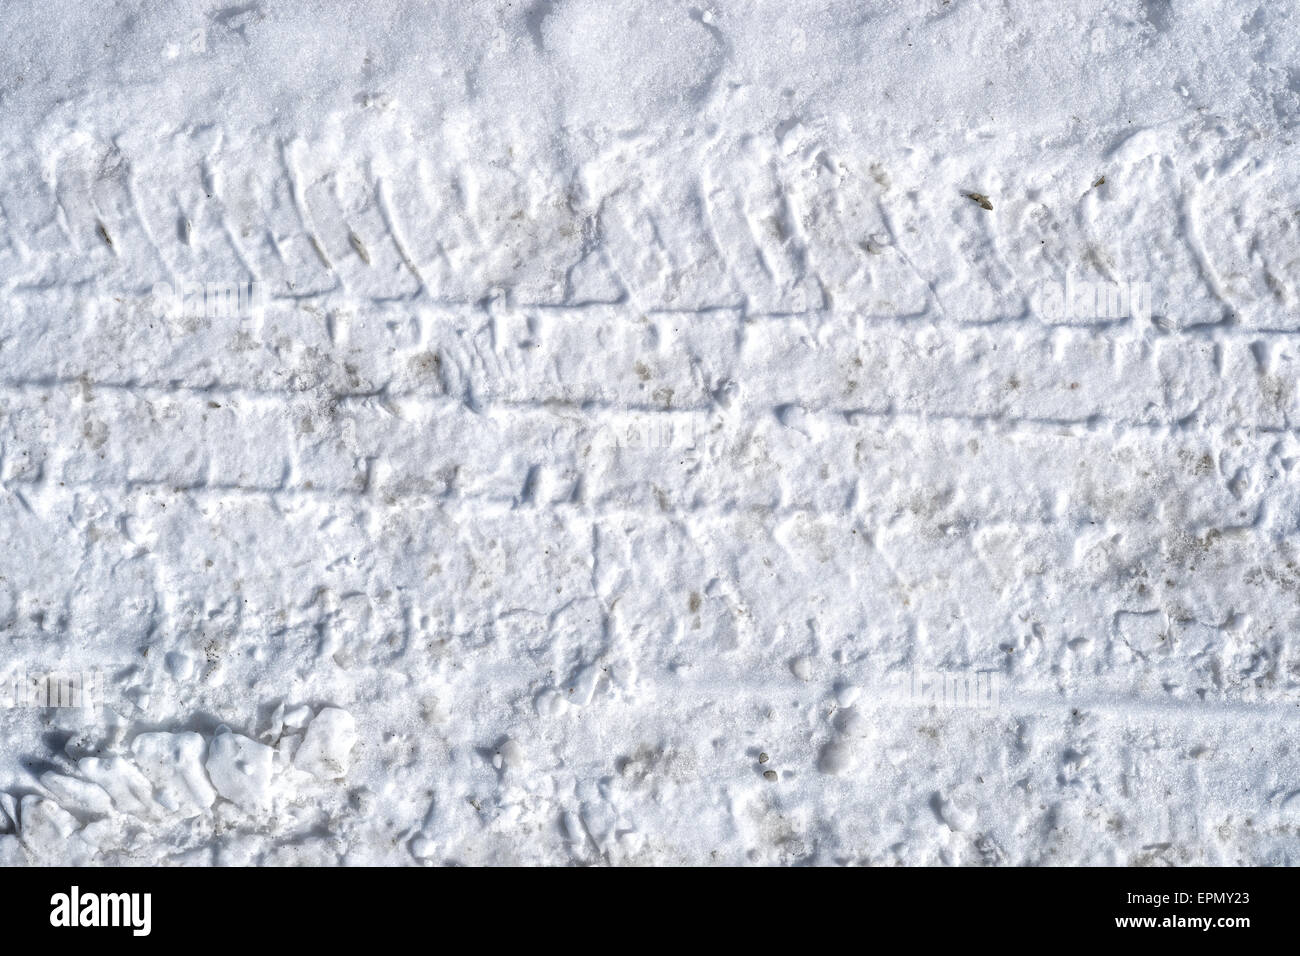 Eine Nahaufnahme des Reifens verfolgt in hart gepresstem Schnee. Stockfoto